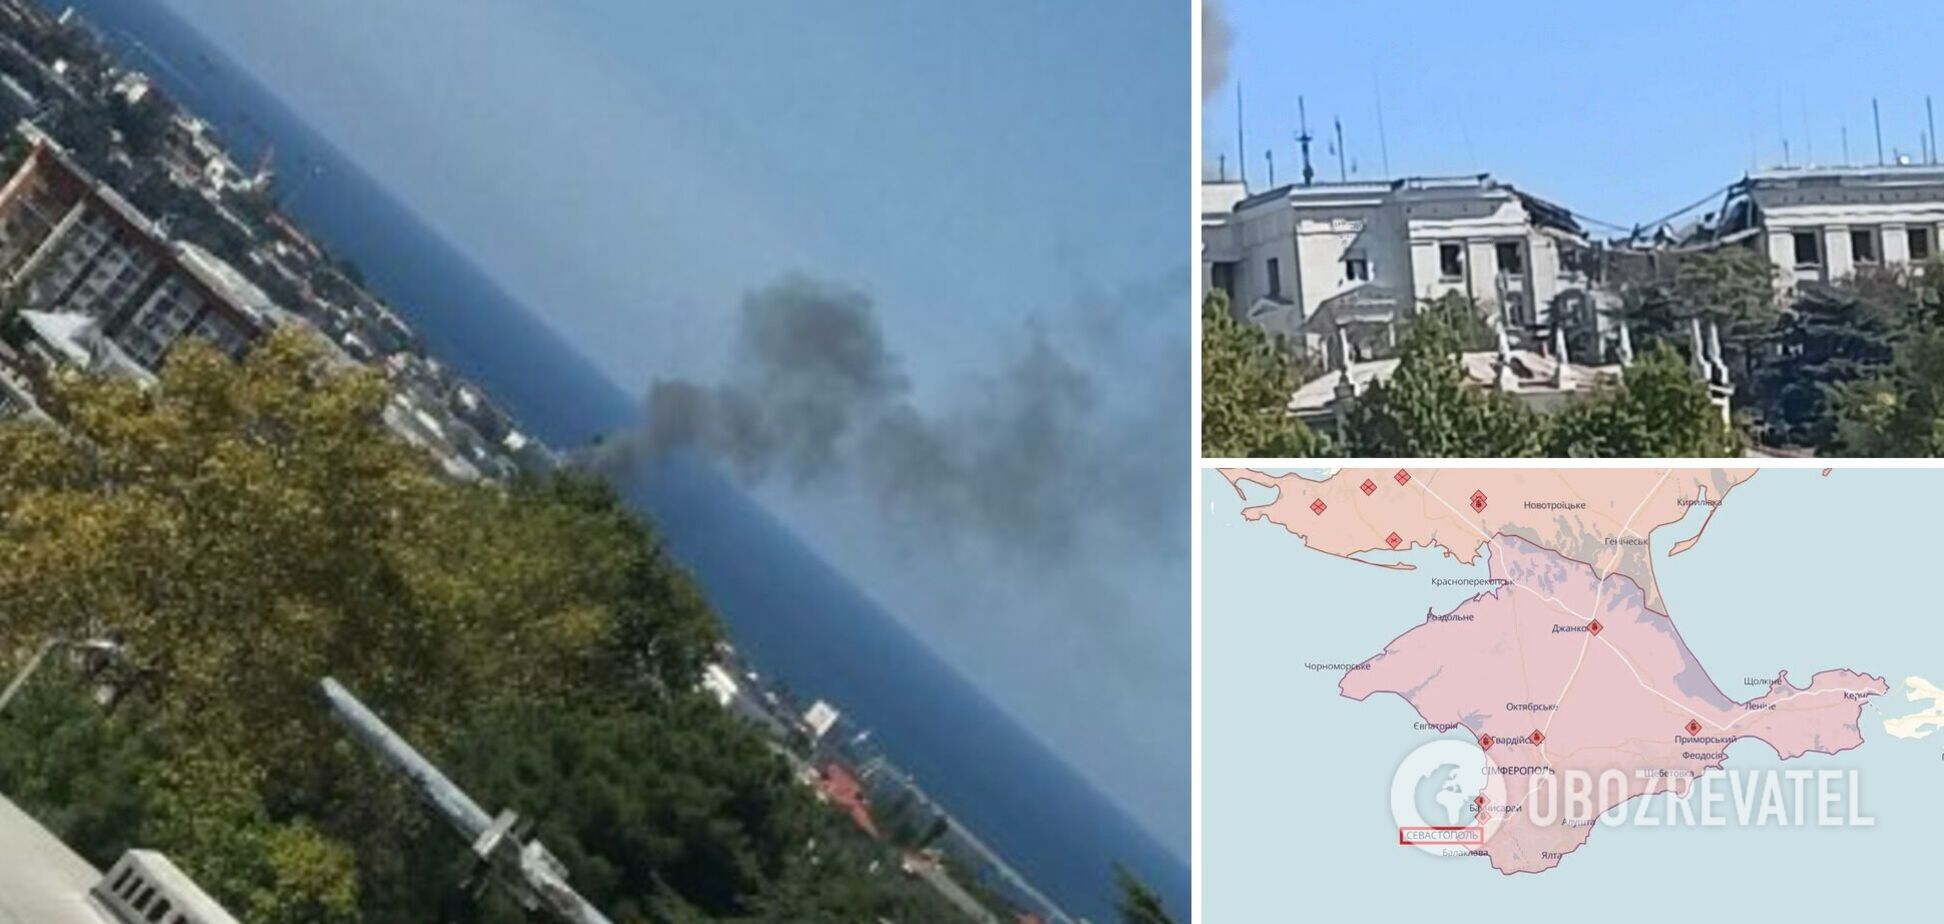 Поднялся черный дым: в Севастополе второй раз за день прогремели взрывы, нанесен удар по штабу ЧФ РФ. Фото